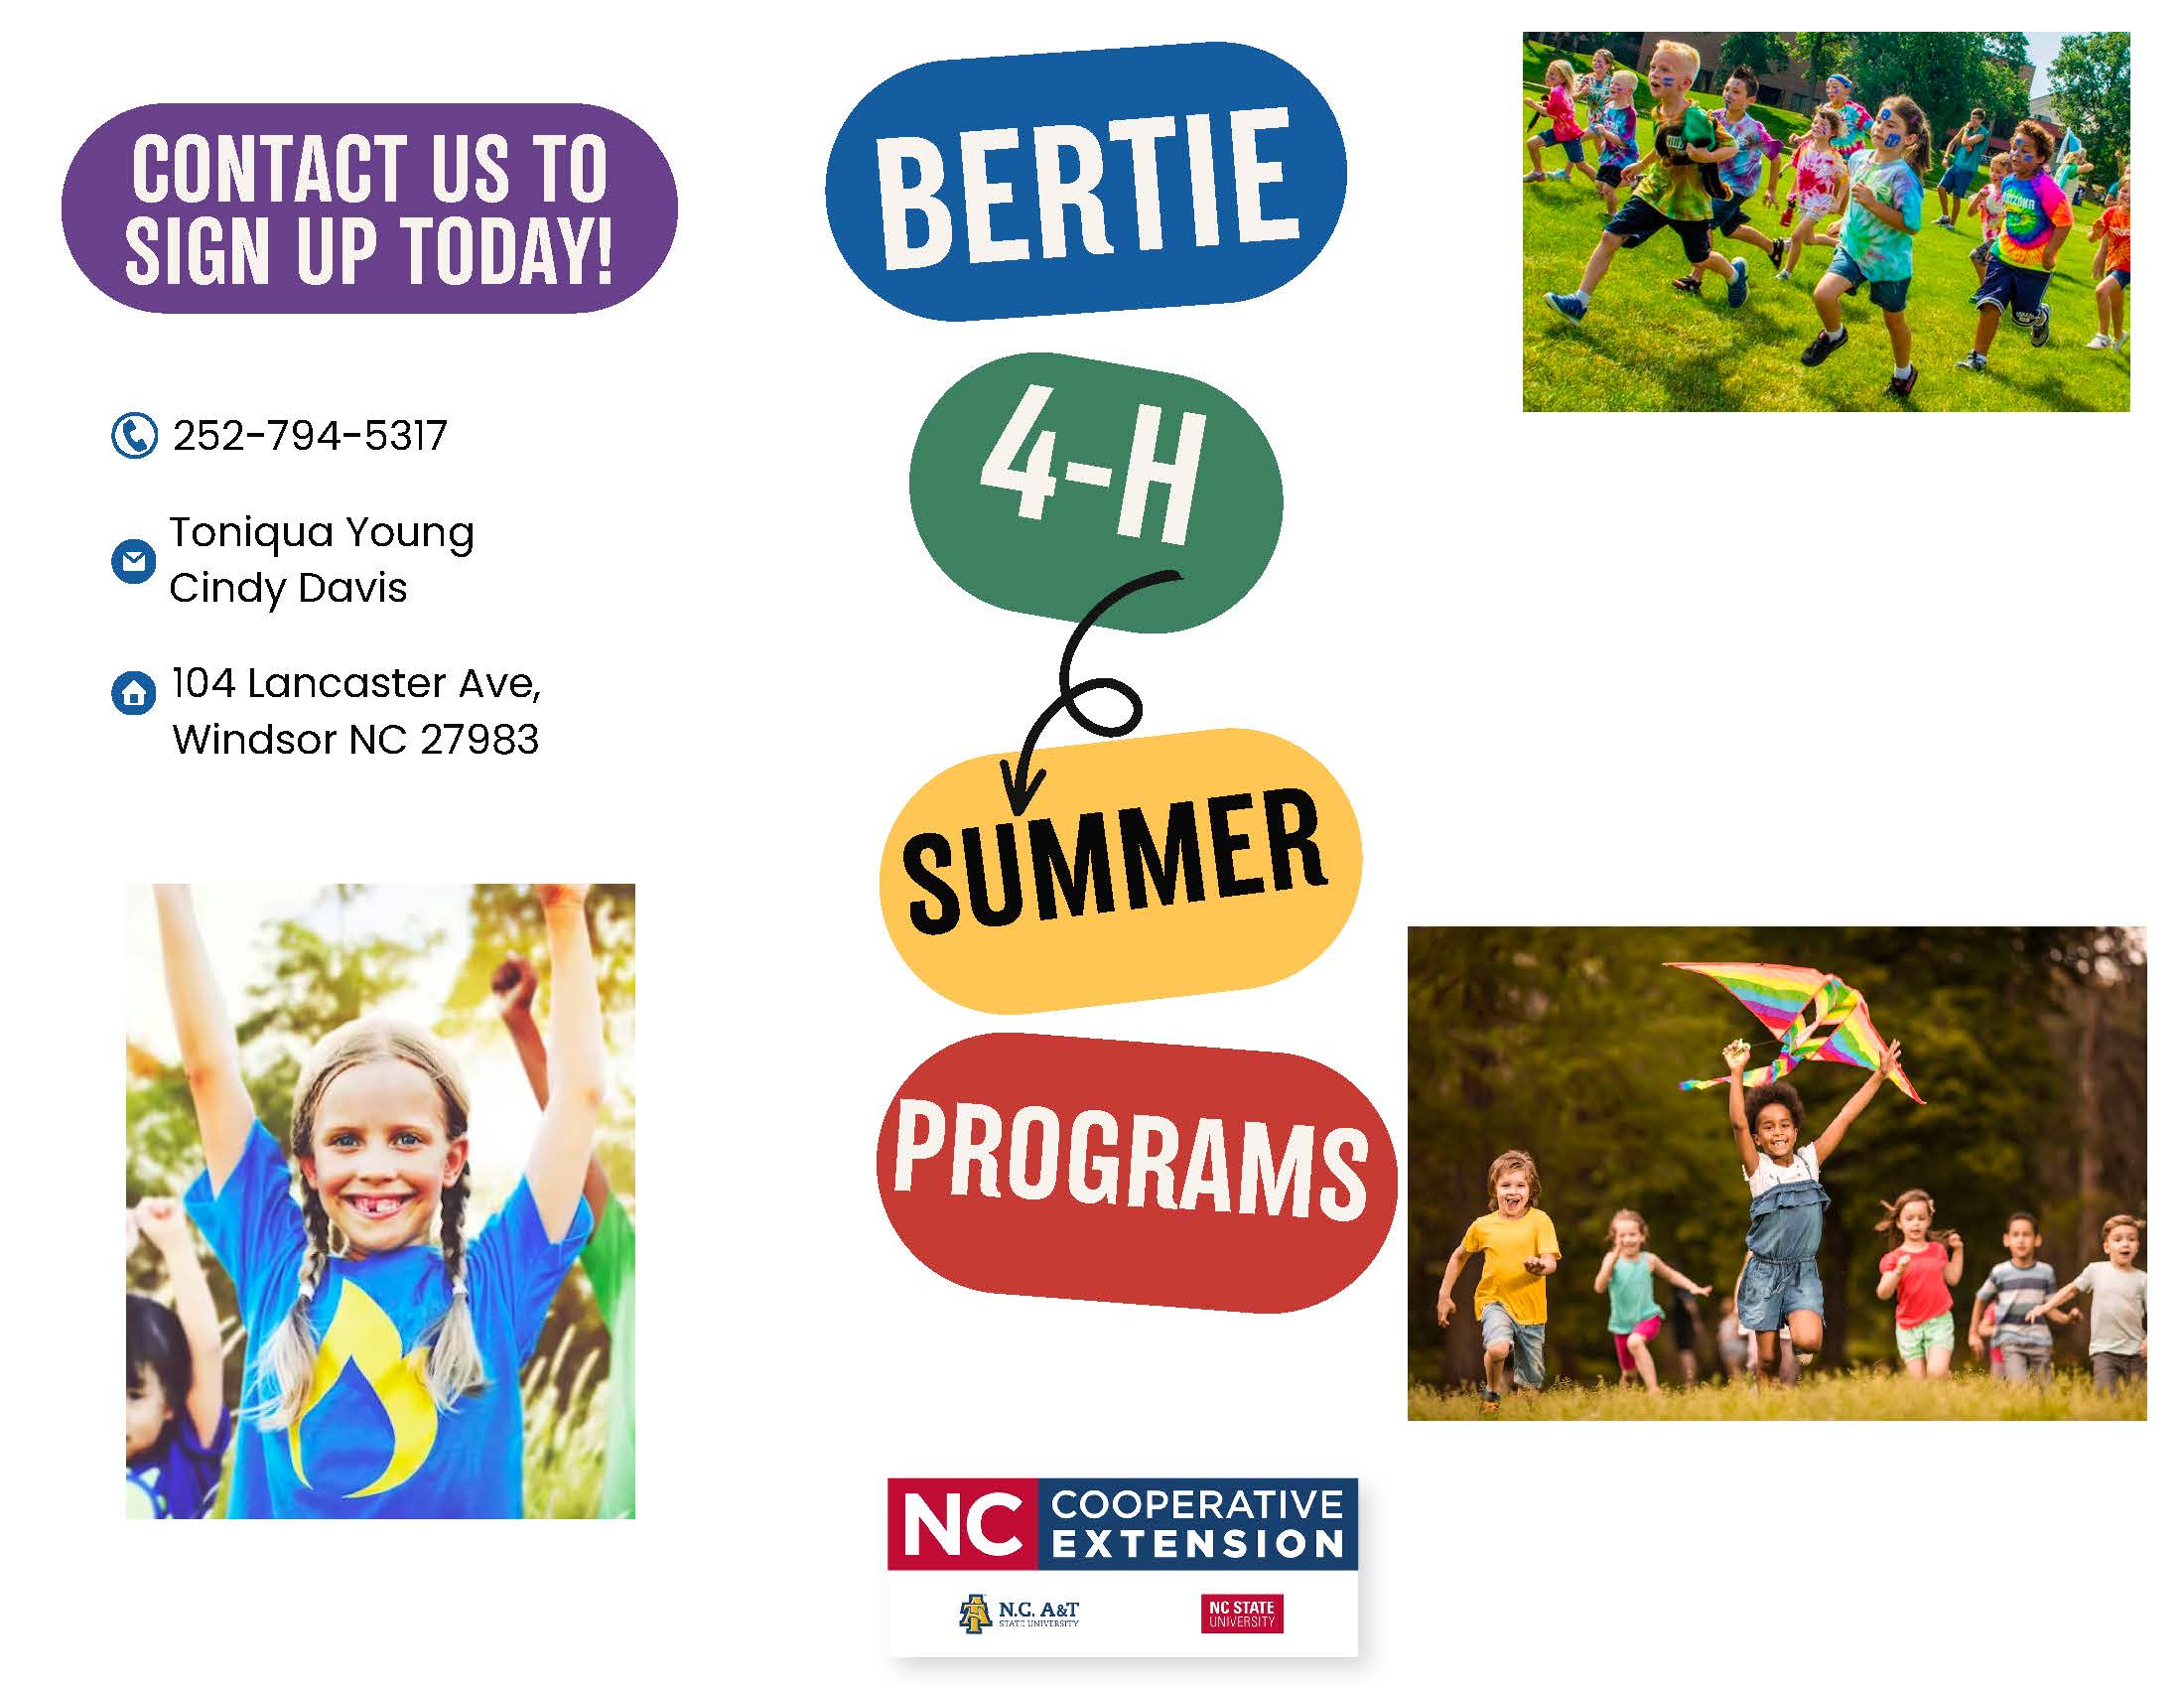 Bertie 4-H Summer Programs